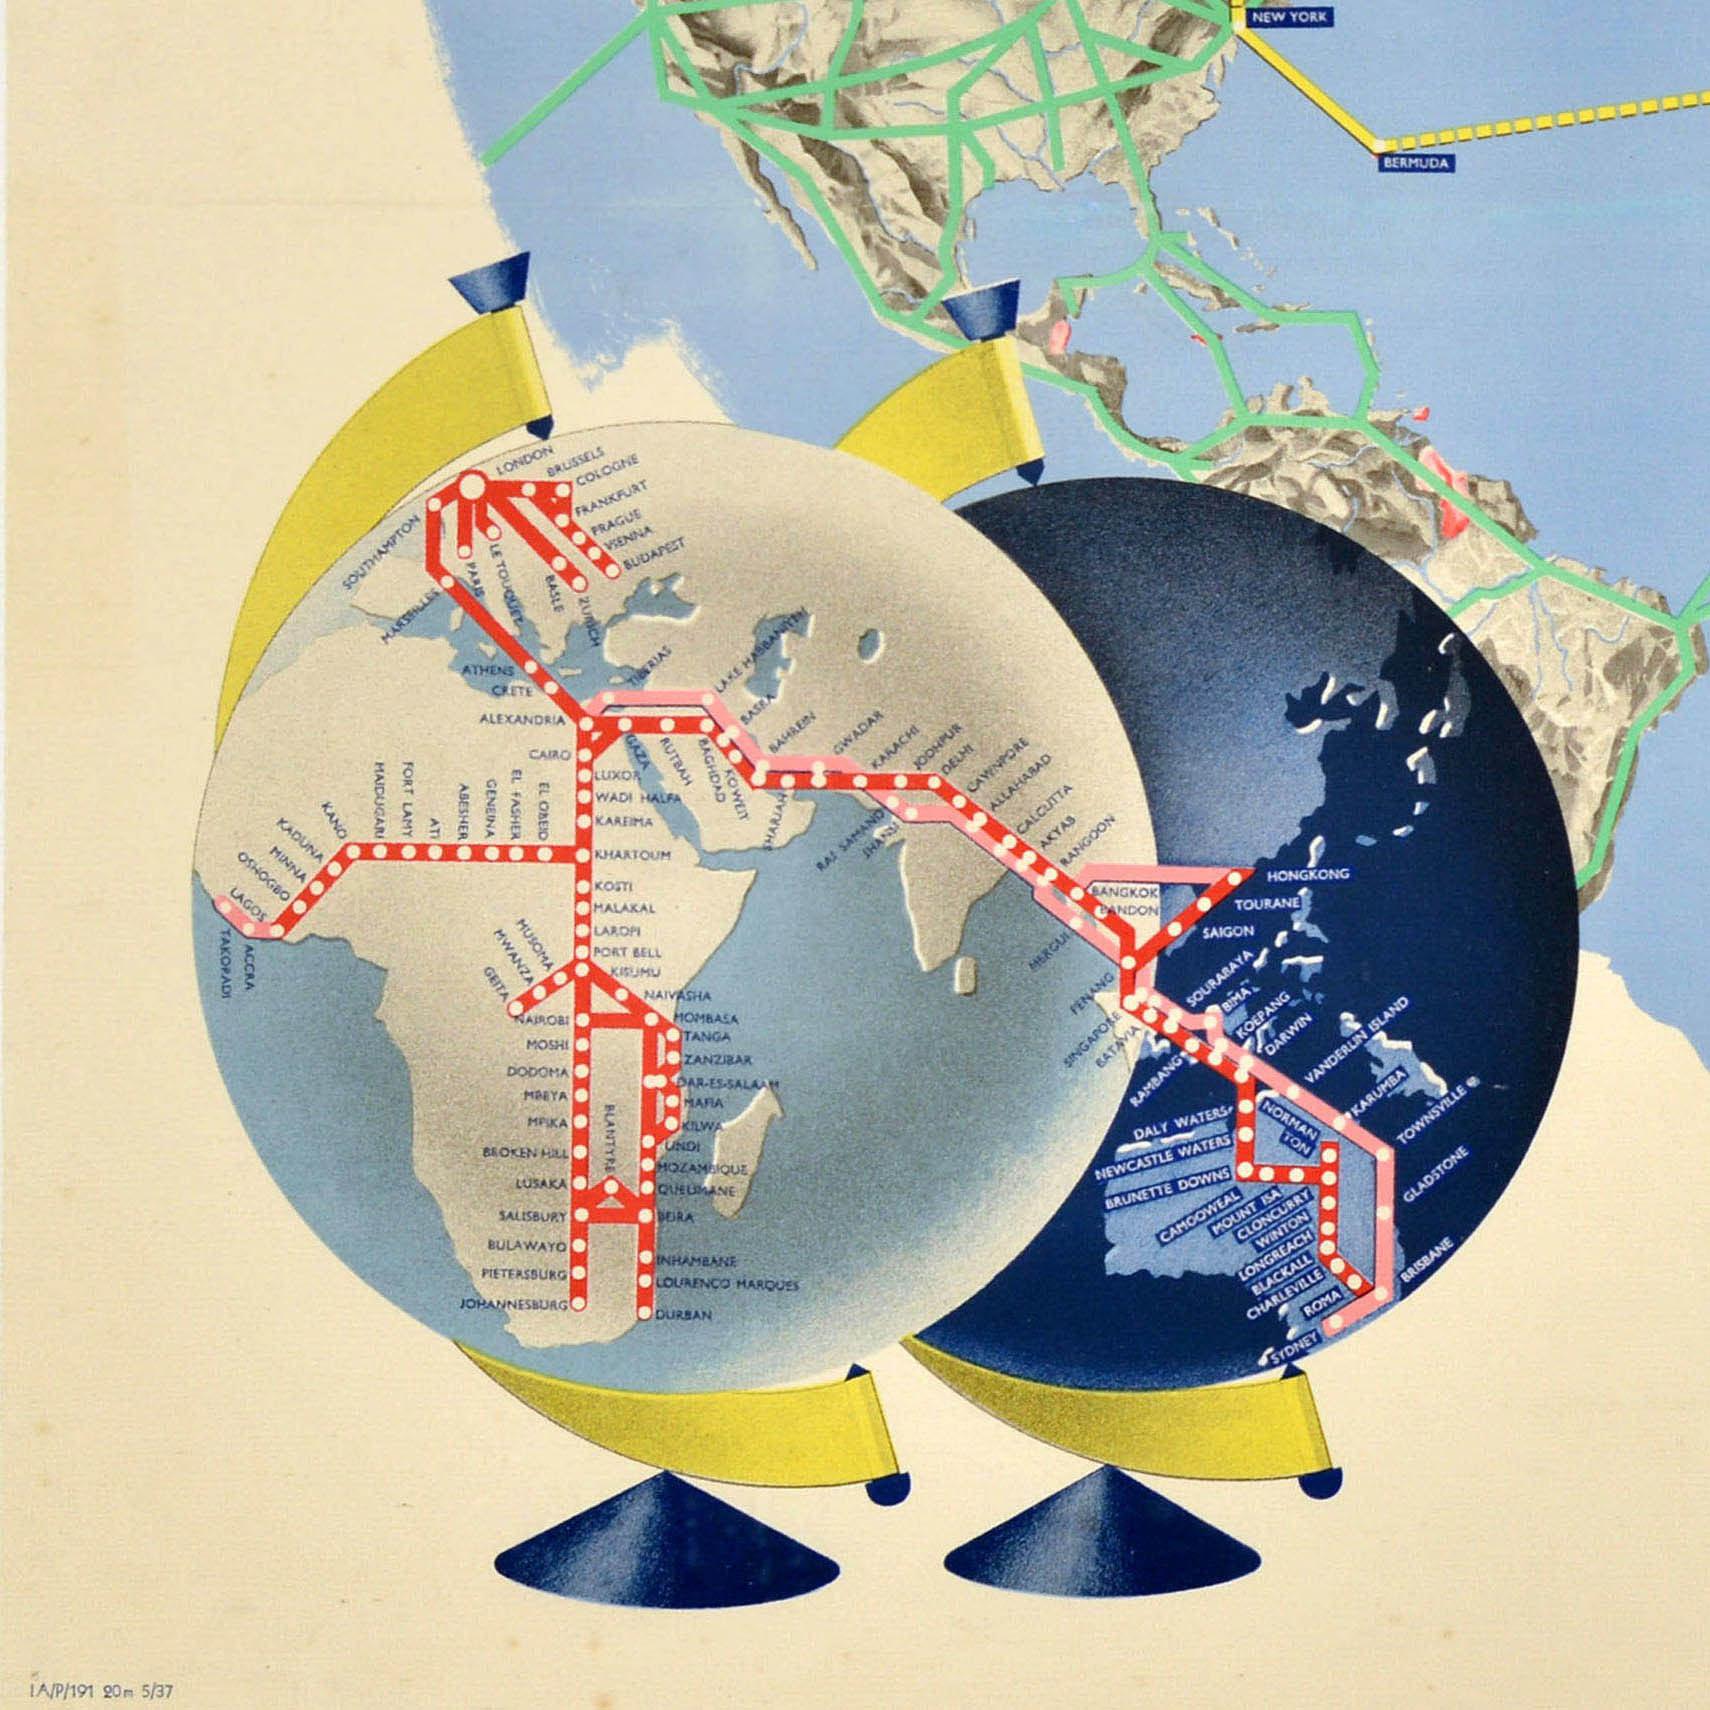 Originales Vintage-Reiseplakat für Imperial Airways mit einer Weltkarte, auf der die von Imperial Airways & Companies betriebenen Routen eingezeichnet sind. Zwei Flugzeuge mit Angaben zu Gewicht, Geschwindigkeit, Besatzung und Passagieren - ein